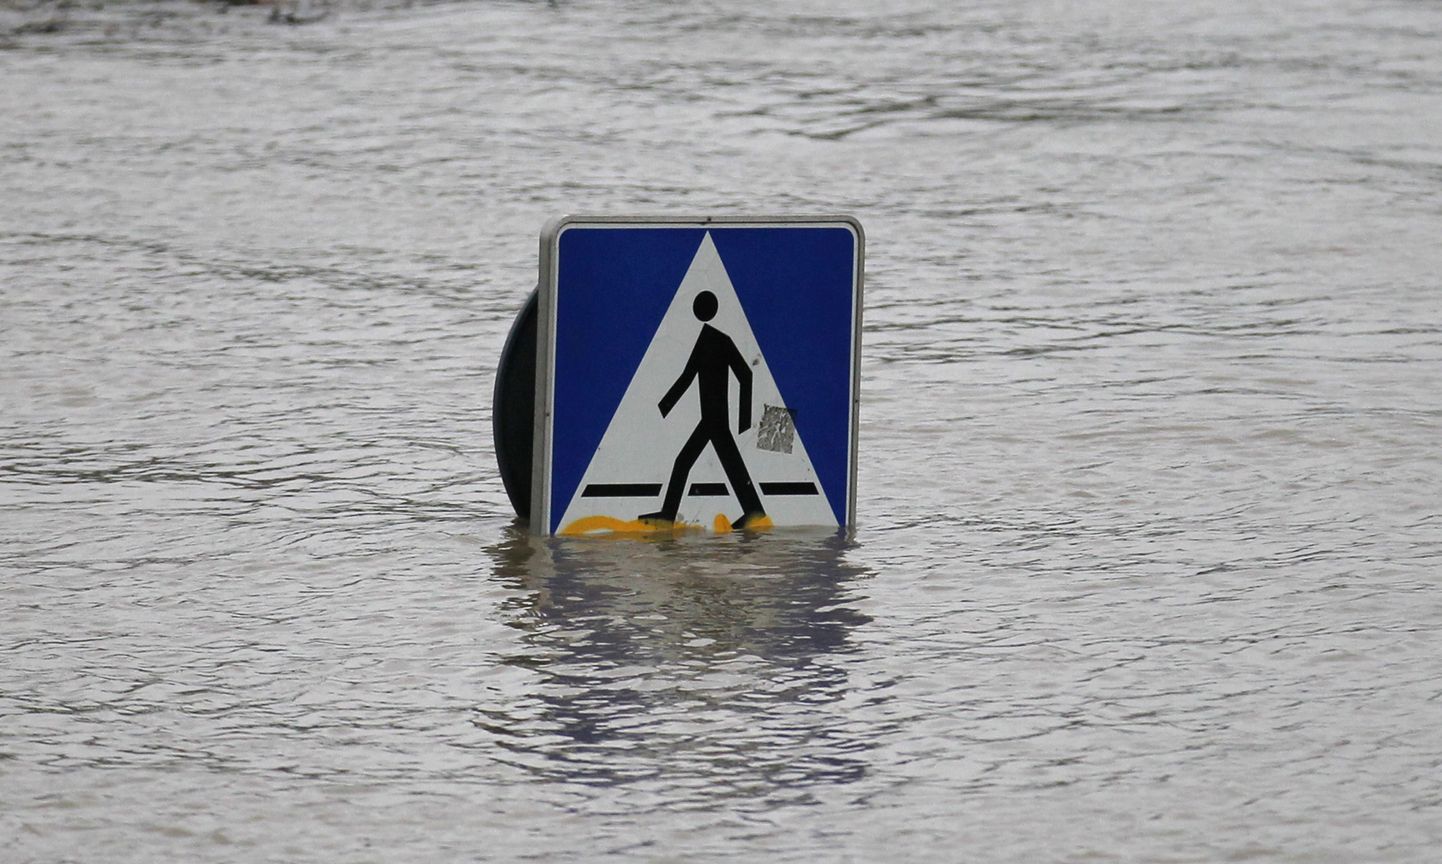 Poolat tabanud üleujutused.